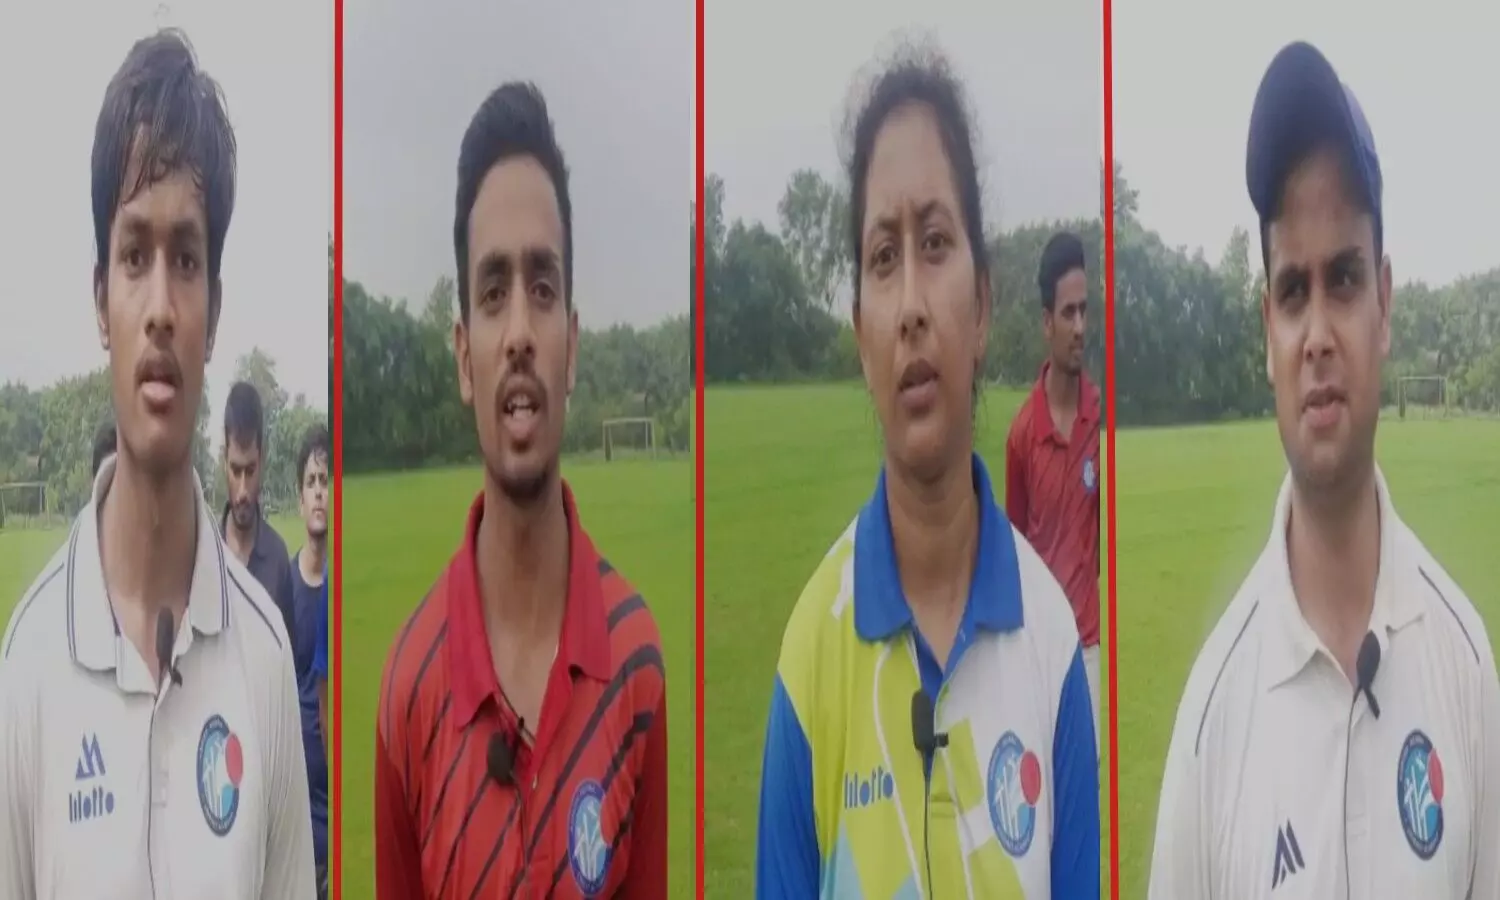 WTC Final: रोमांचक मोड पर फाइनल मैच, प्रयागराज के युवा खिलाड़ियो ने Team India की जीत के लिए की दुआ